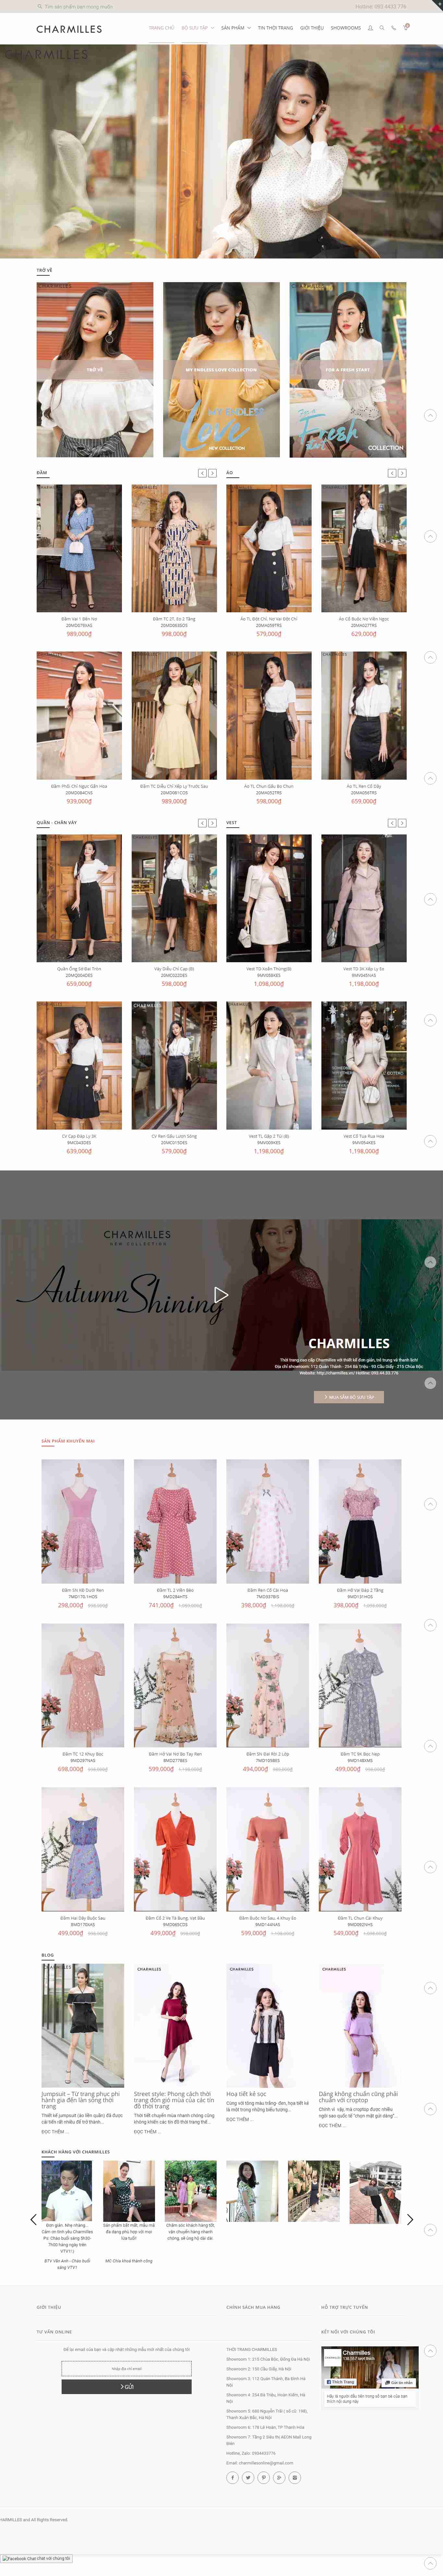 Thiết kế Website thời trang công sở - charmilles.vn